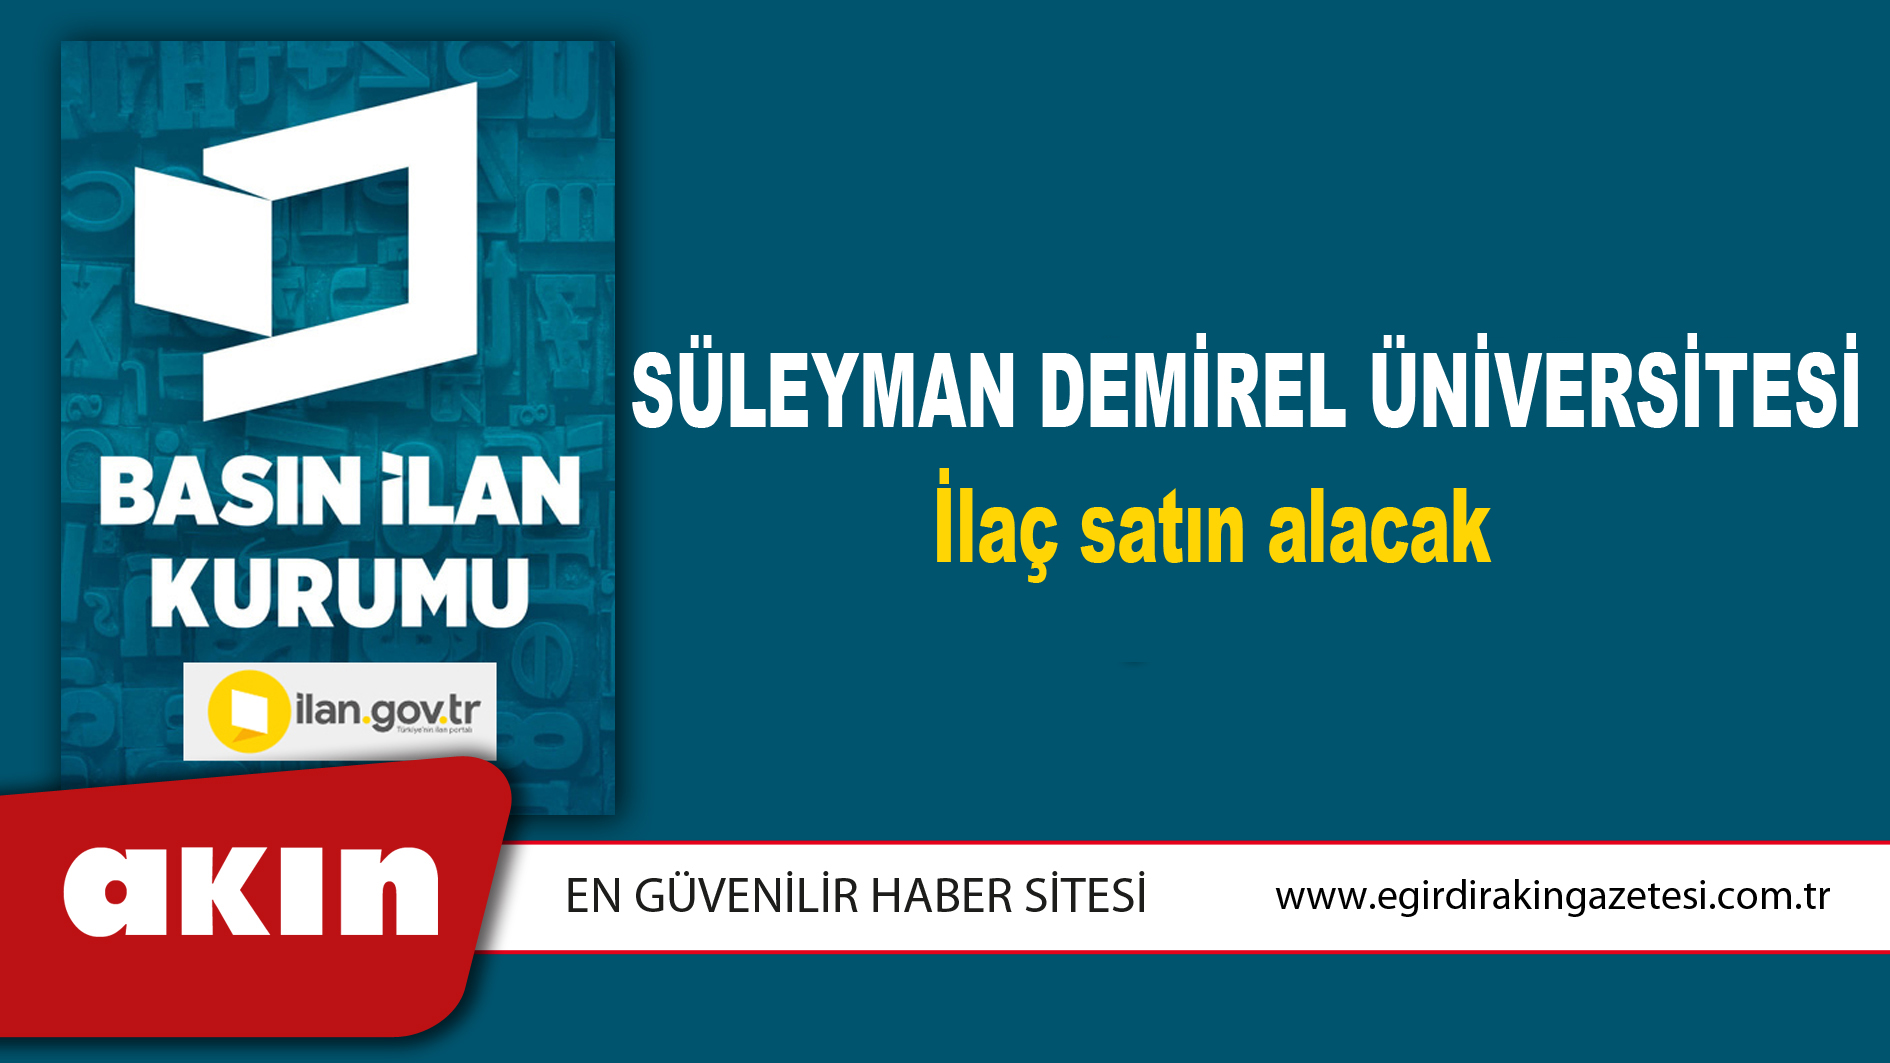 Süleyman Demirel Üniversitesi İlaç satın alacak